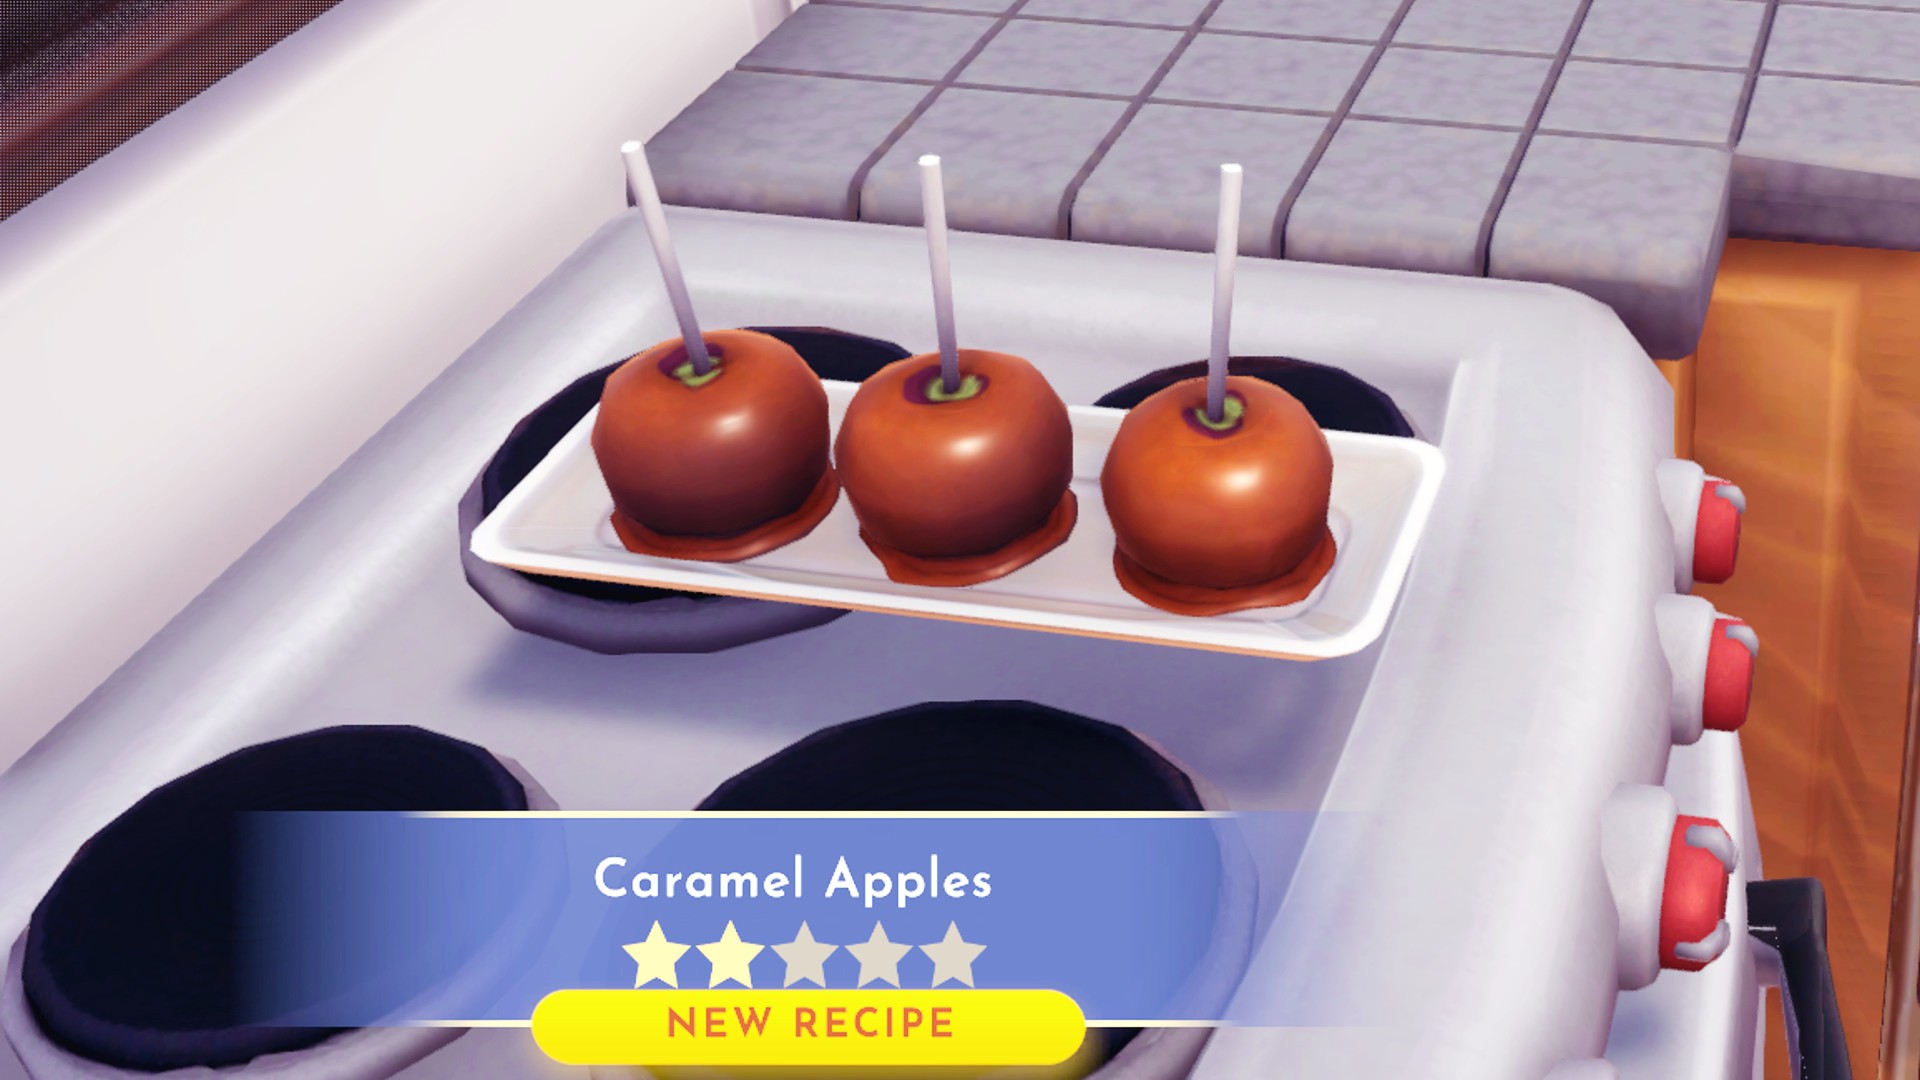 ของหวาน Disney Dreamlight Valley: แอปเปิ้ลคาราเมลสามตัวนั่งบนจานแสดงสูตรสองดาว